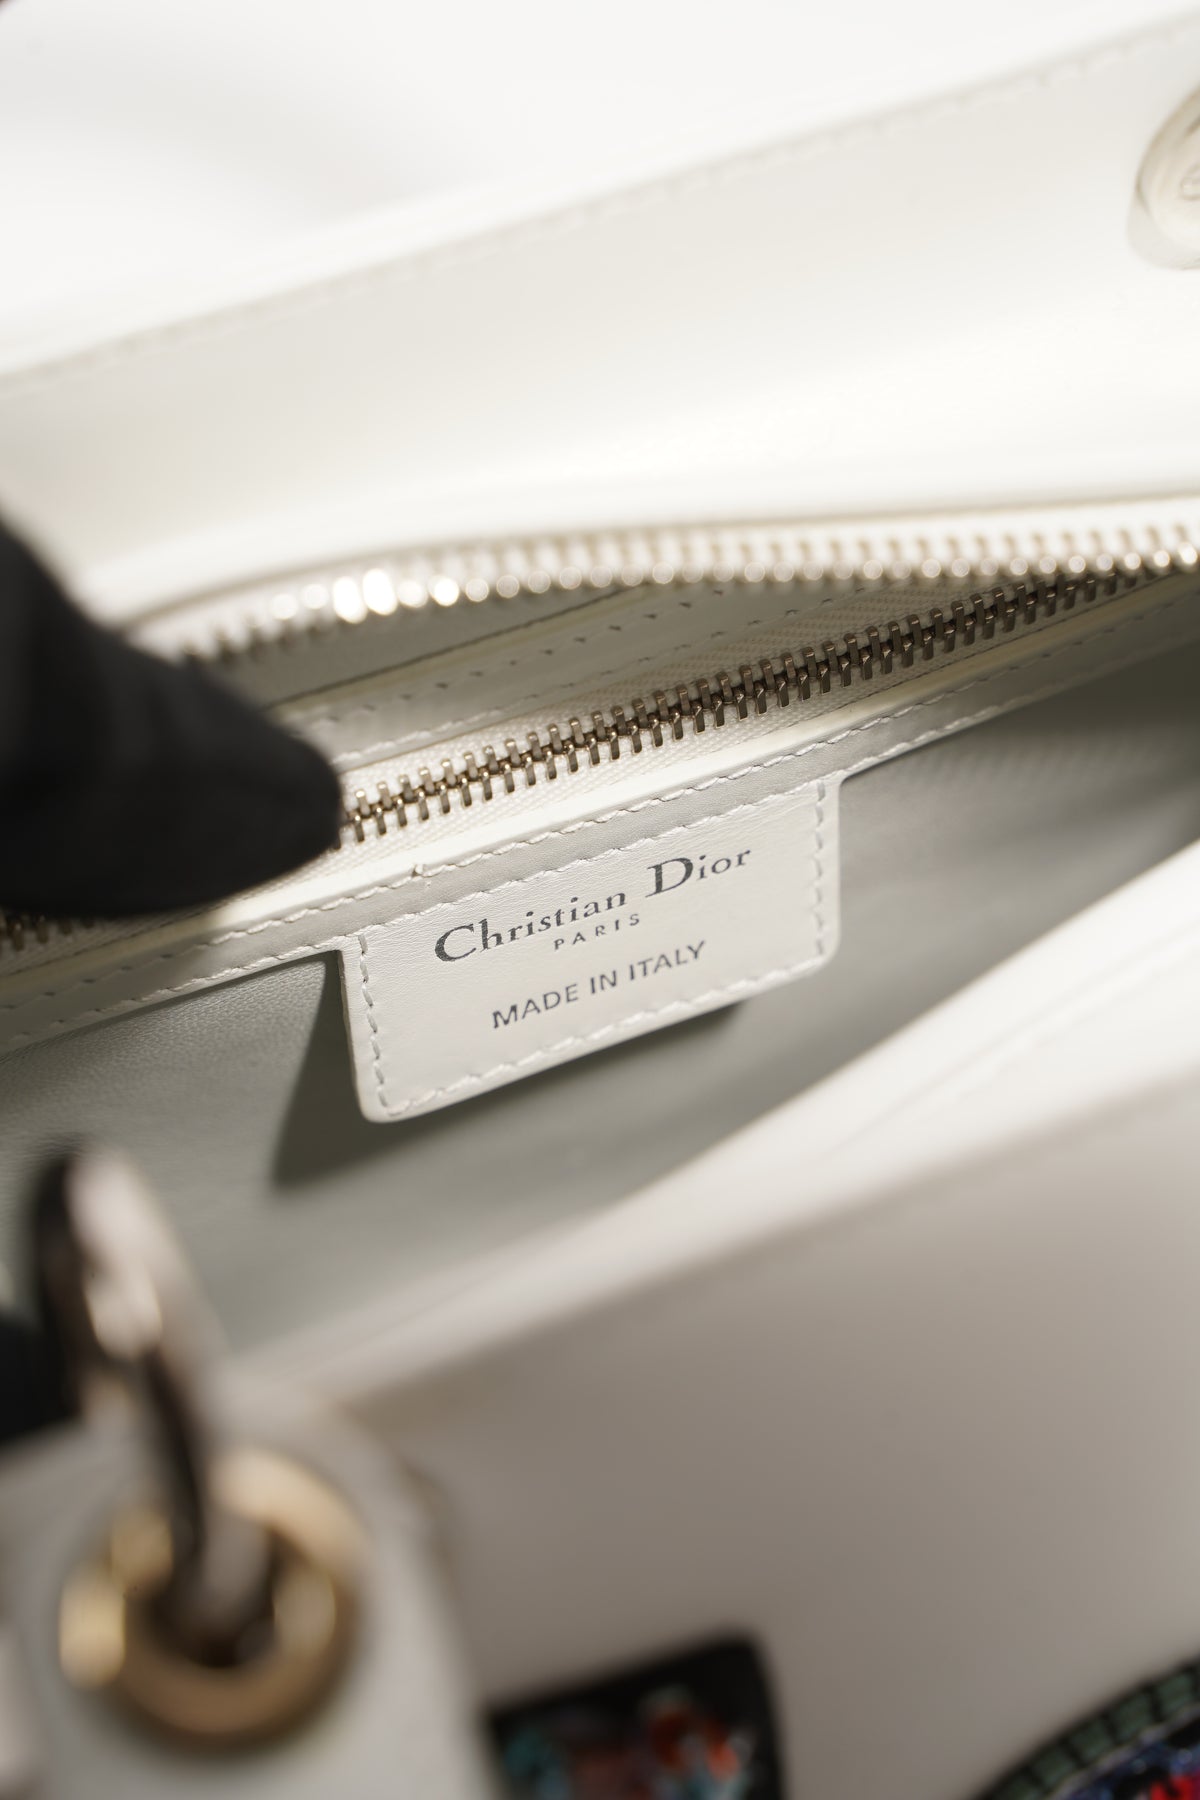 Unboxing the Louis Vuitton Damier VERONA PM Authentic bag purse